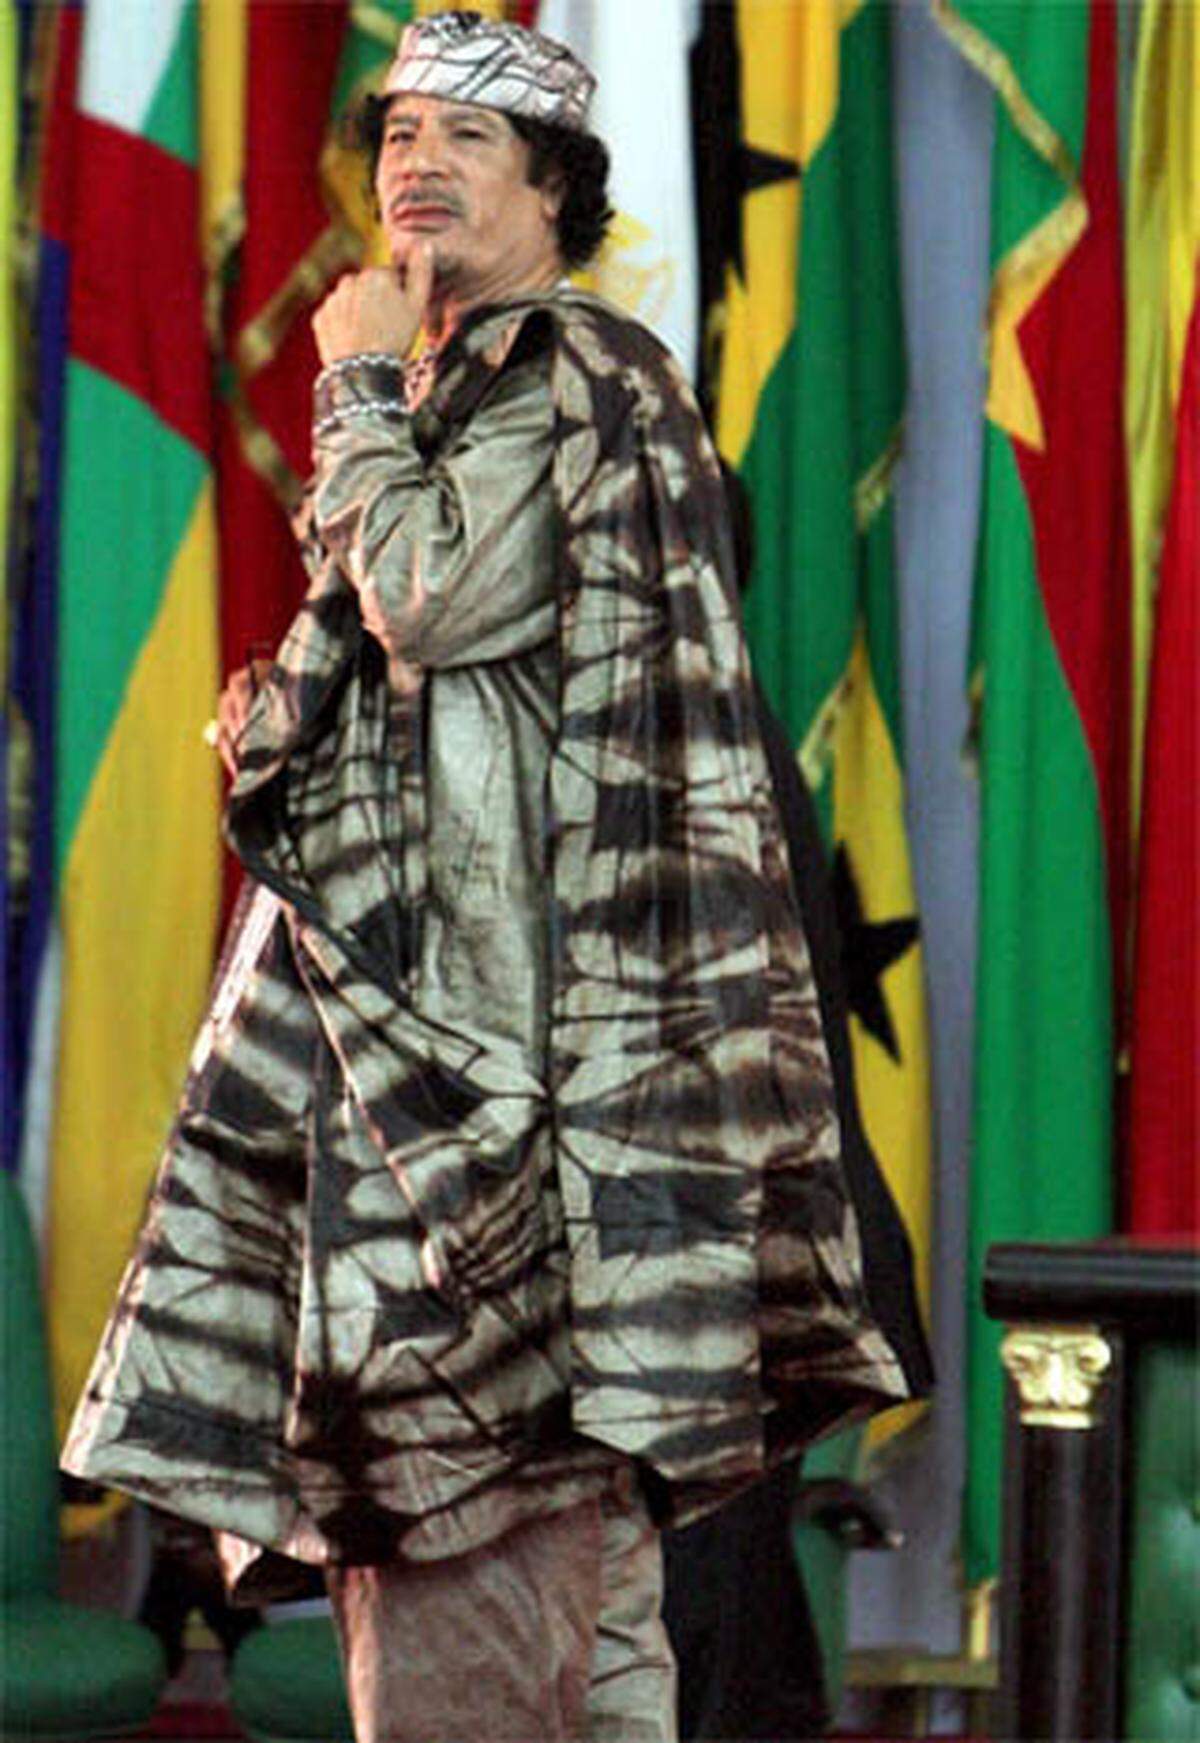 Kleider machen nicht nur Leute, sondern auch Politiker. Heutzutage haben sich auch die mächtigsten Männer und Frauen dem Modediktat zu unterwerfen, wenn sie sich nicht dem Spott der Öffentlichkeit aussetzen wollen. Doch nicht alle geben sich geschlagen: Einige Staatschefs verweigern sich hartnäckig jeder Stilberatung und pflegen ihren exzentrischen Look.Allen voran Libyens Staatschef Muammar Gaddafi: Seine psychedelischen Outfits sind zu seinem Markenzeichen geworden.